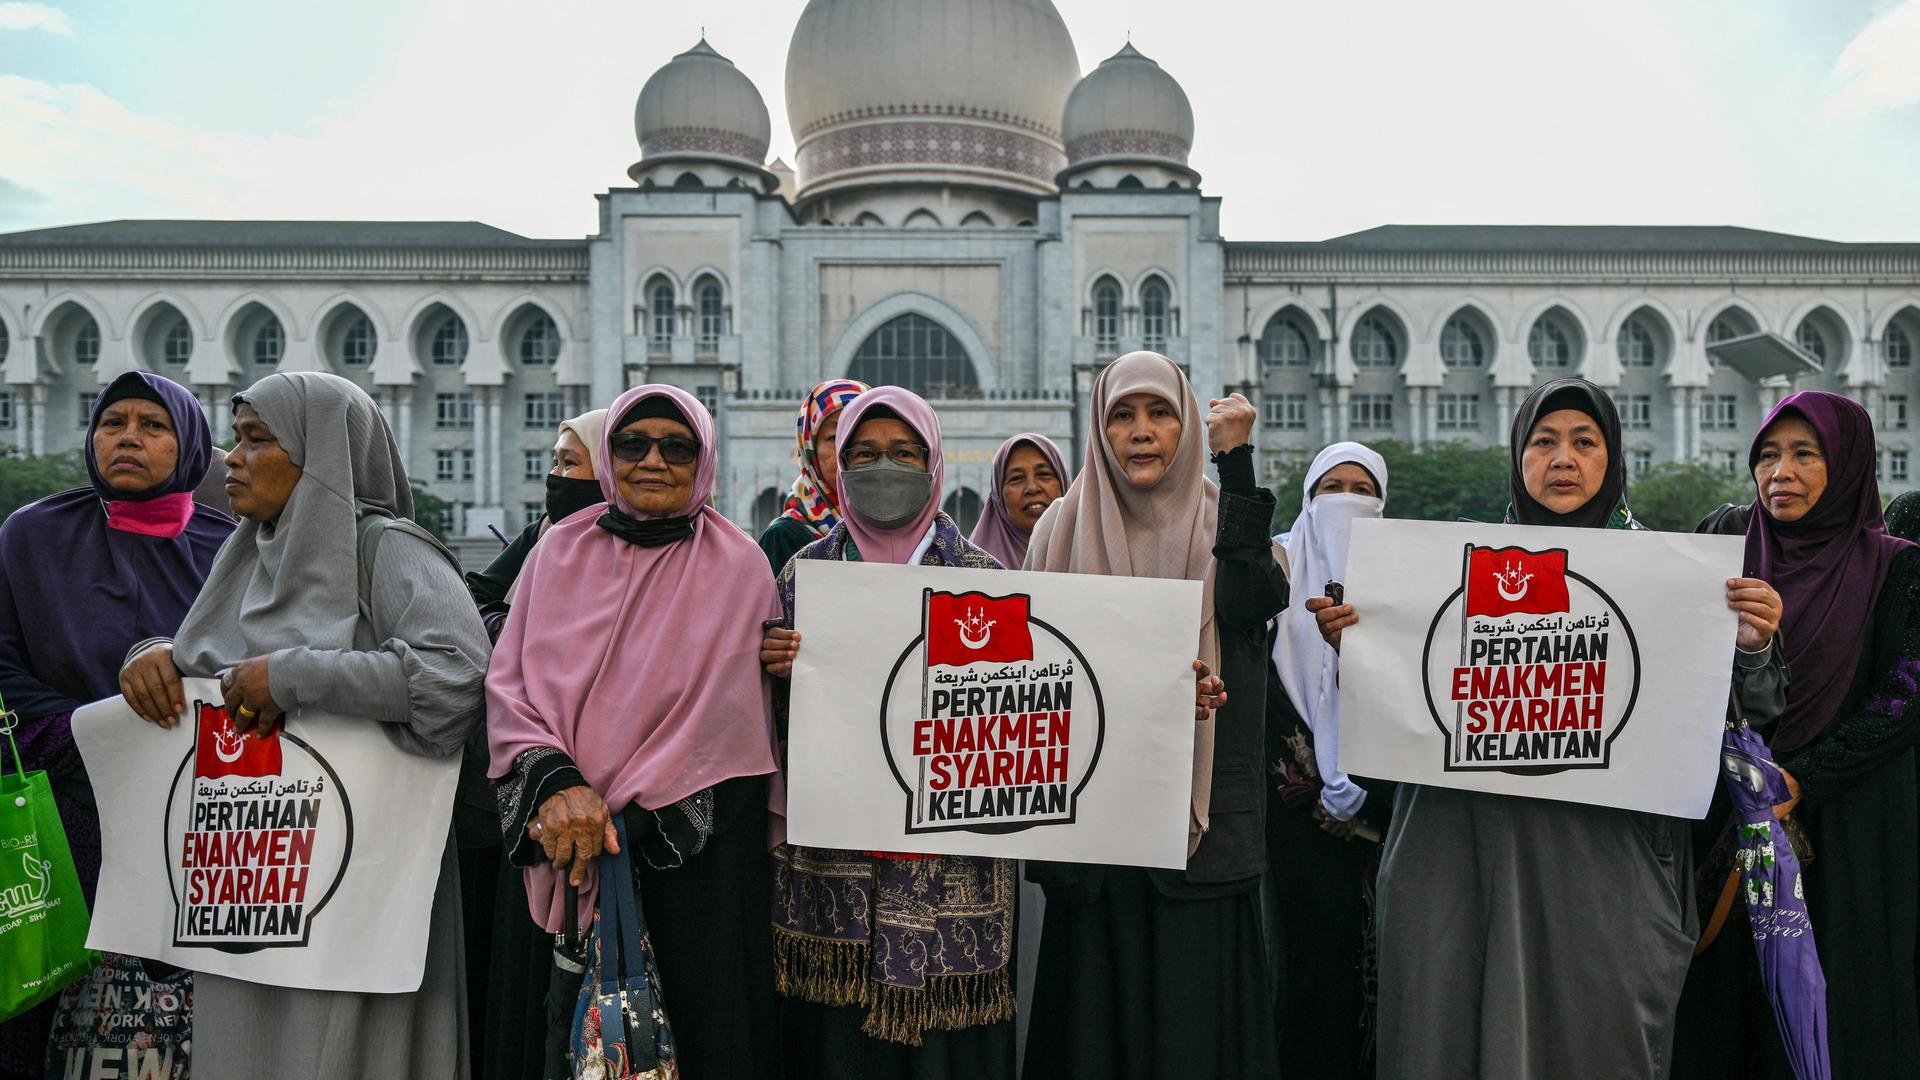 Frauen mit Kopftüchern stehen vor einem Gebäude und halten Protest-Schilder hoch.